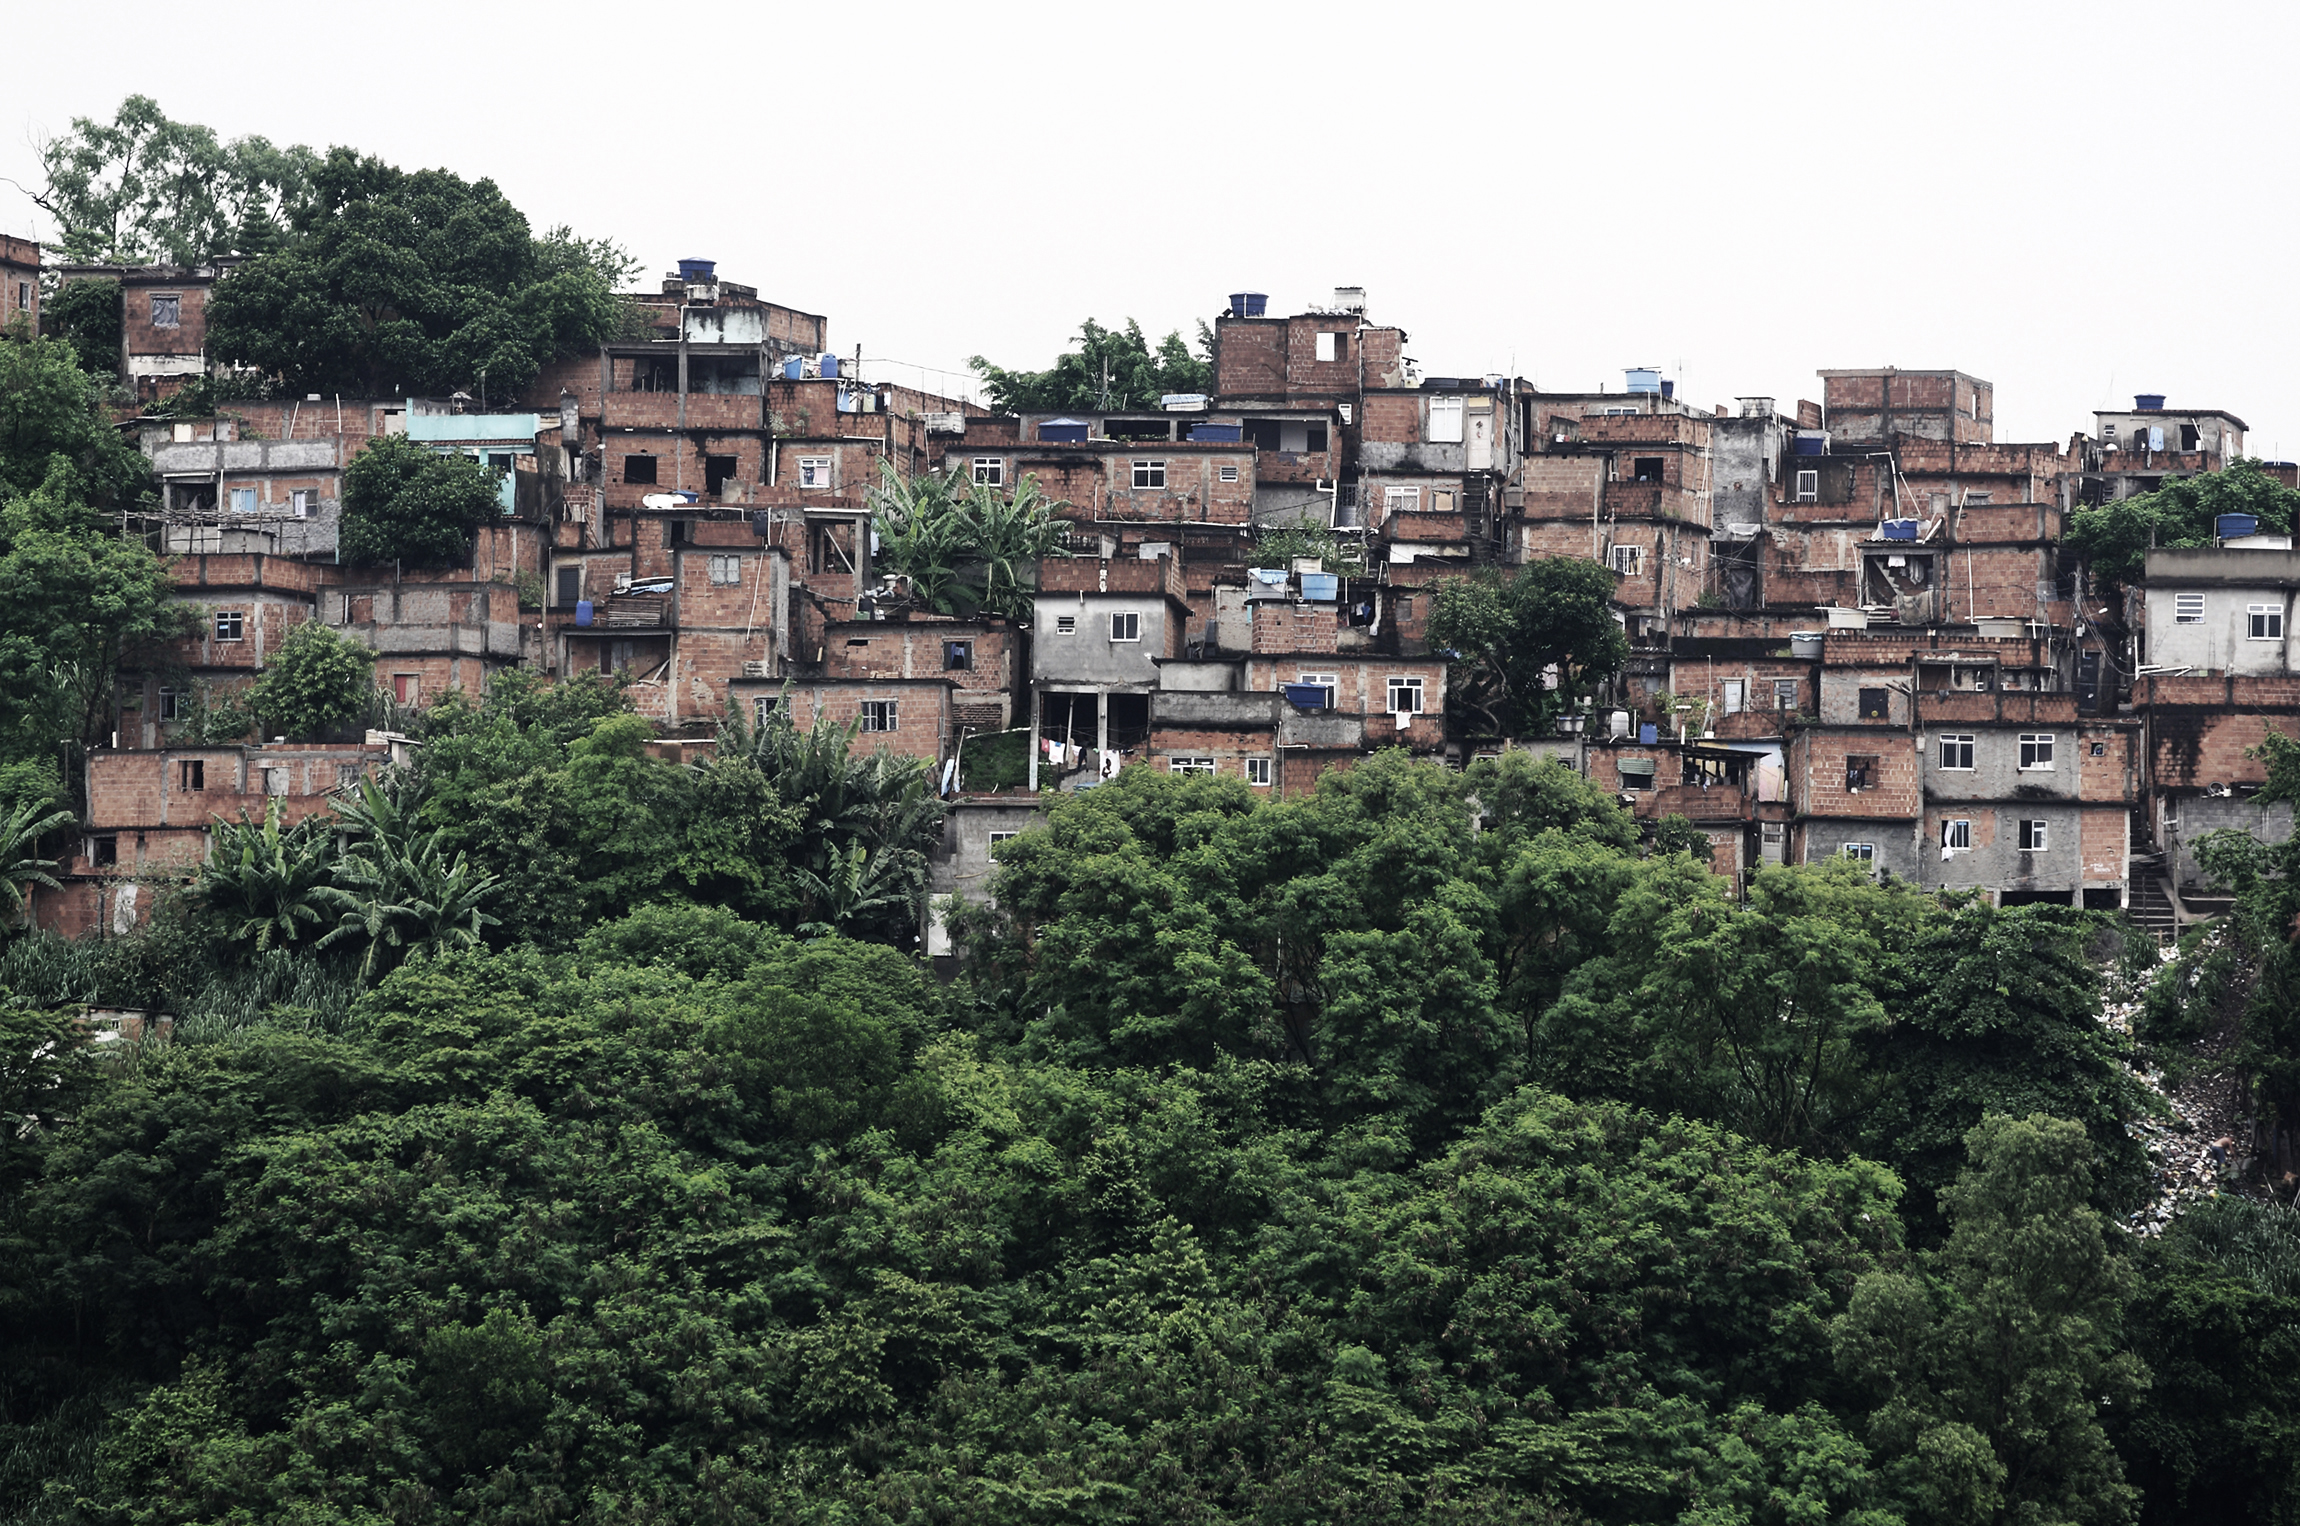 Sancionada lei que institui assistência técnica para habitação de interesse social no Rio de Janeiro